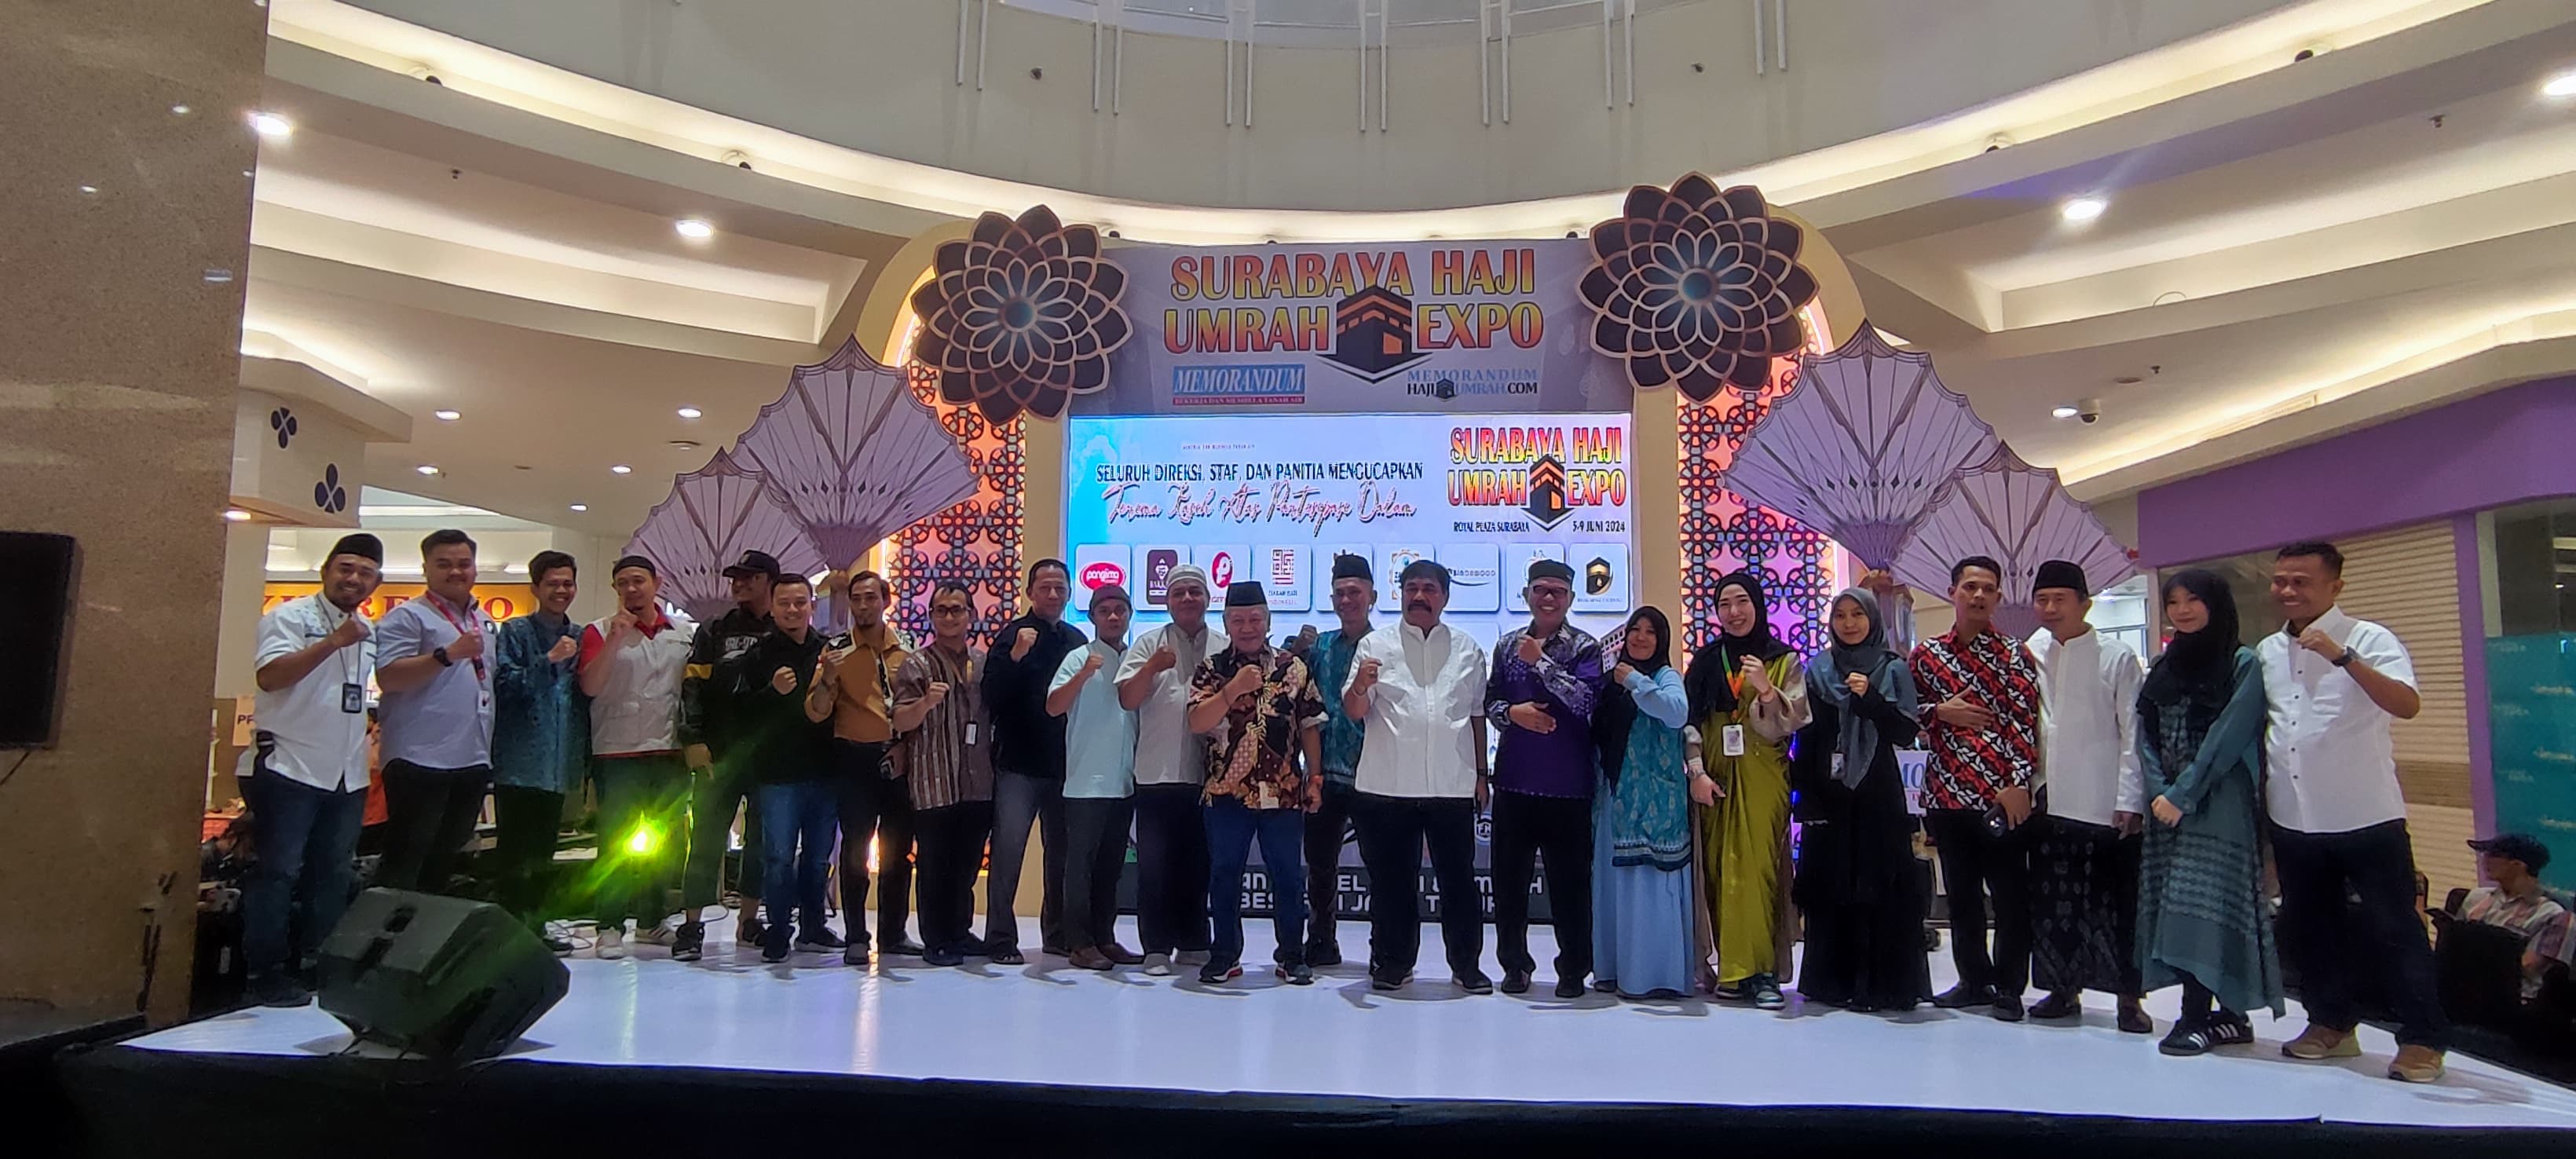 Pameran Surabaya Haji Umrah Expo Memorandum Ditutup dengan Sukses, Omzet Tembus Rp3,5 Miliar